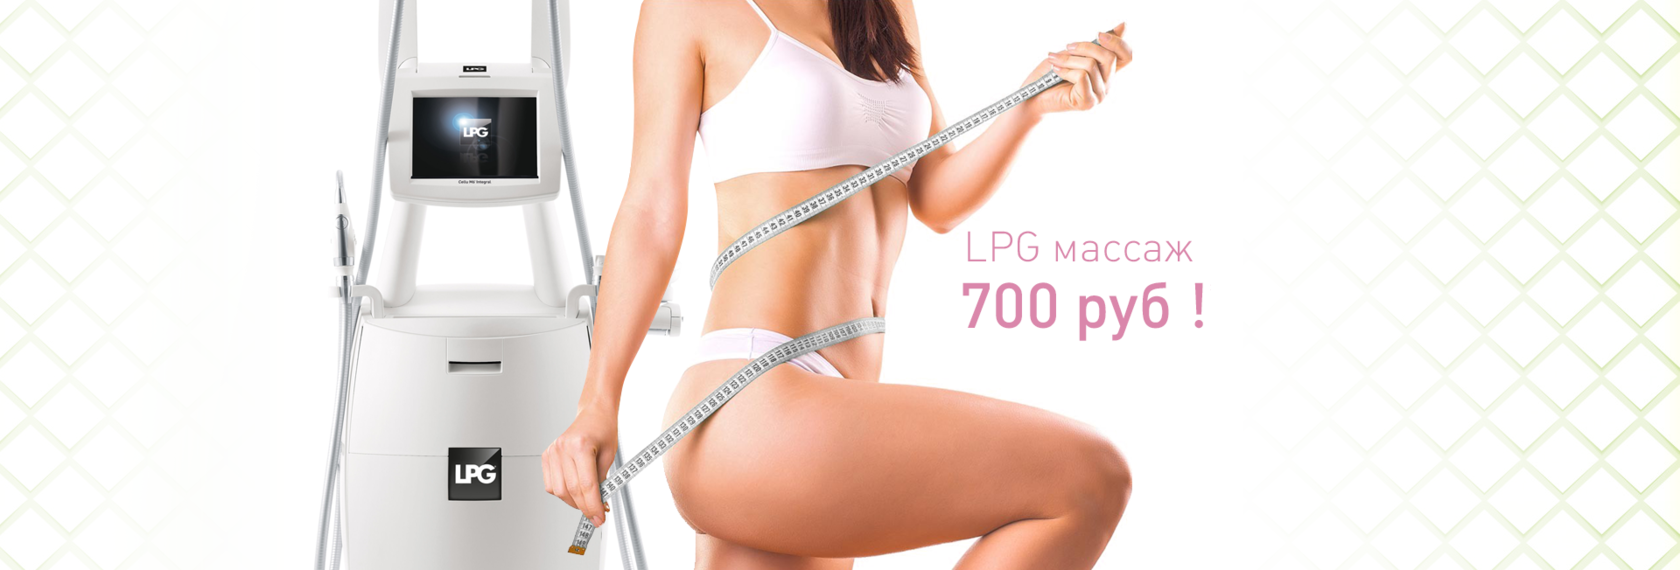 Lpg массаж плюсы. LPG массаж. Аппаратный массаж LPG. Аппаратный массаж тела LPG. LPG массаж реклама.